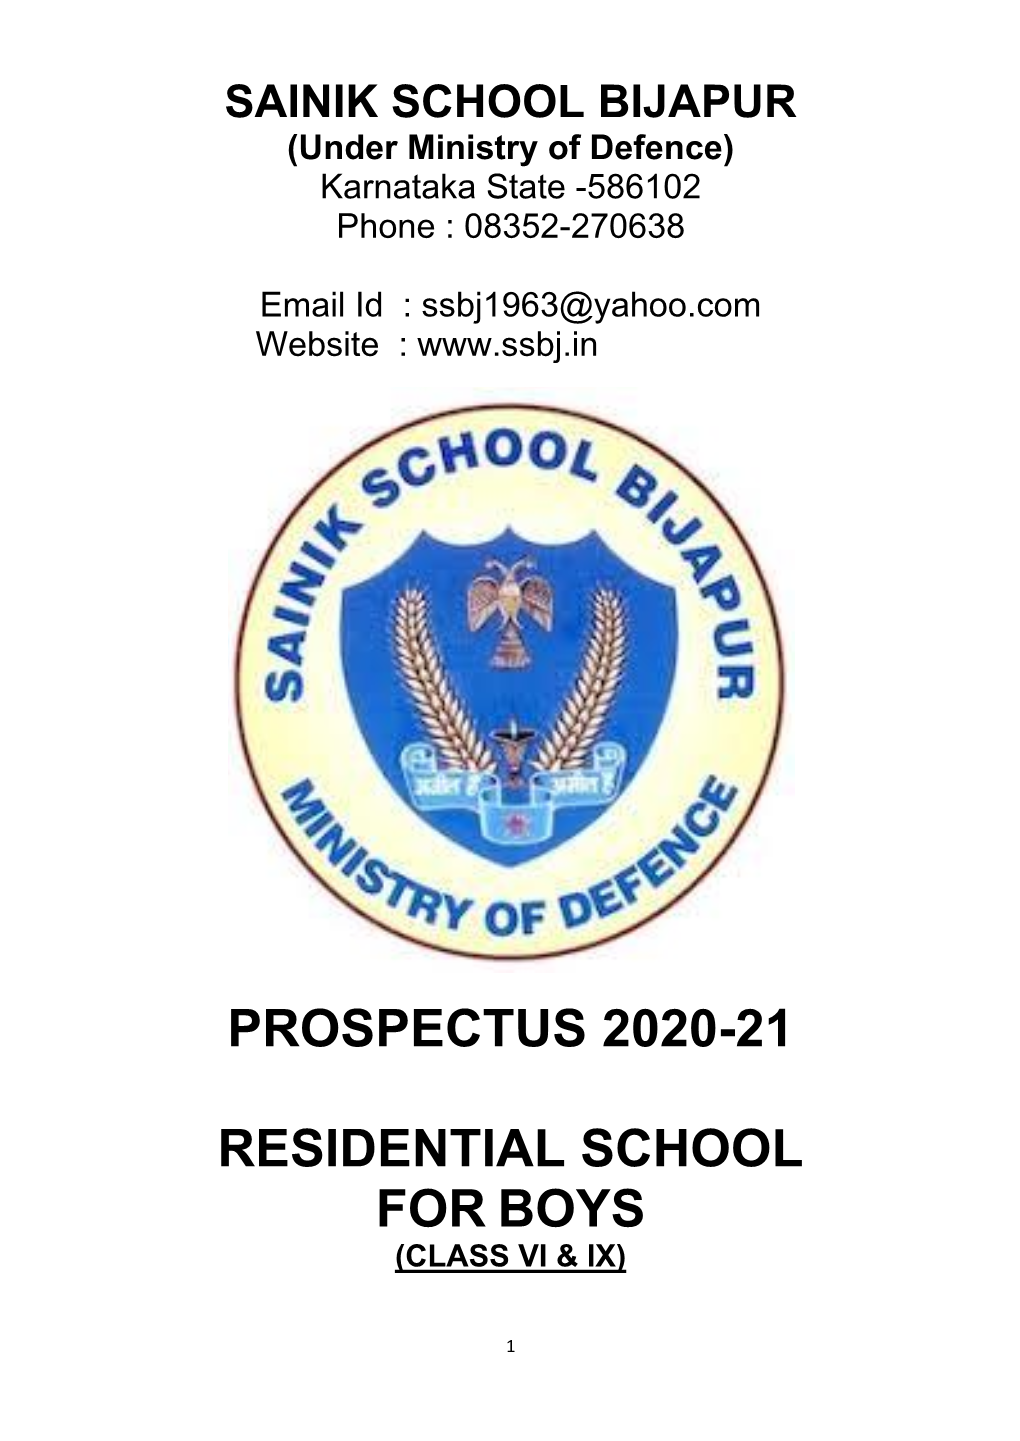 Prospectus- 2020-21